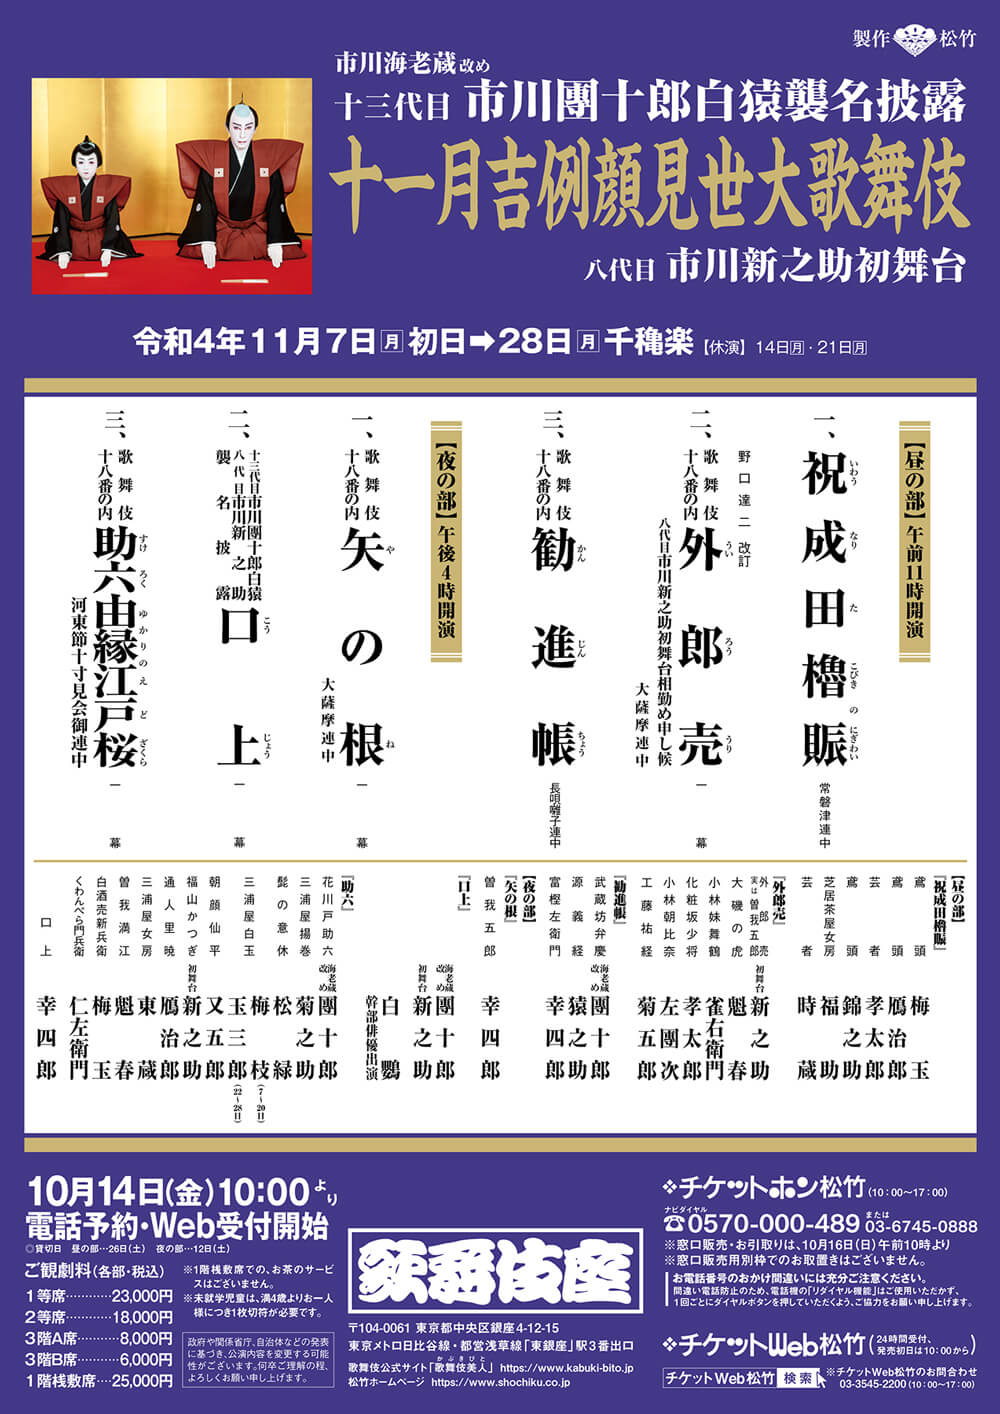 November Program at the kabukiza